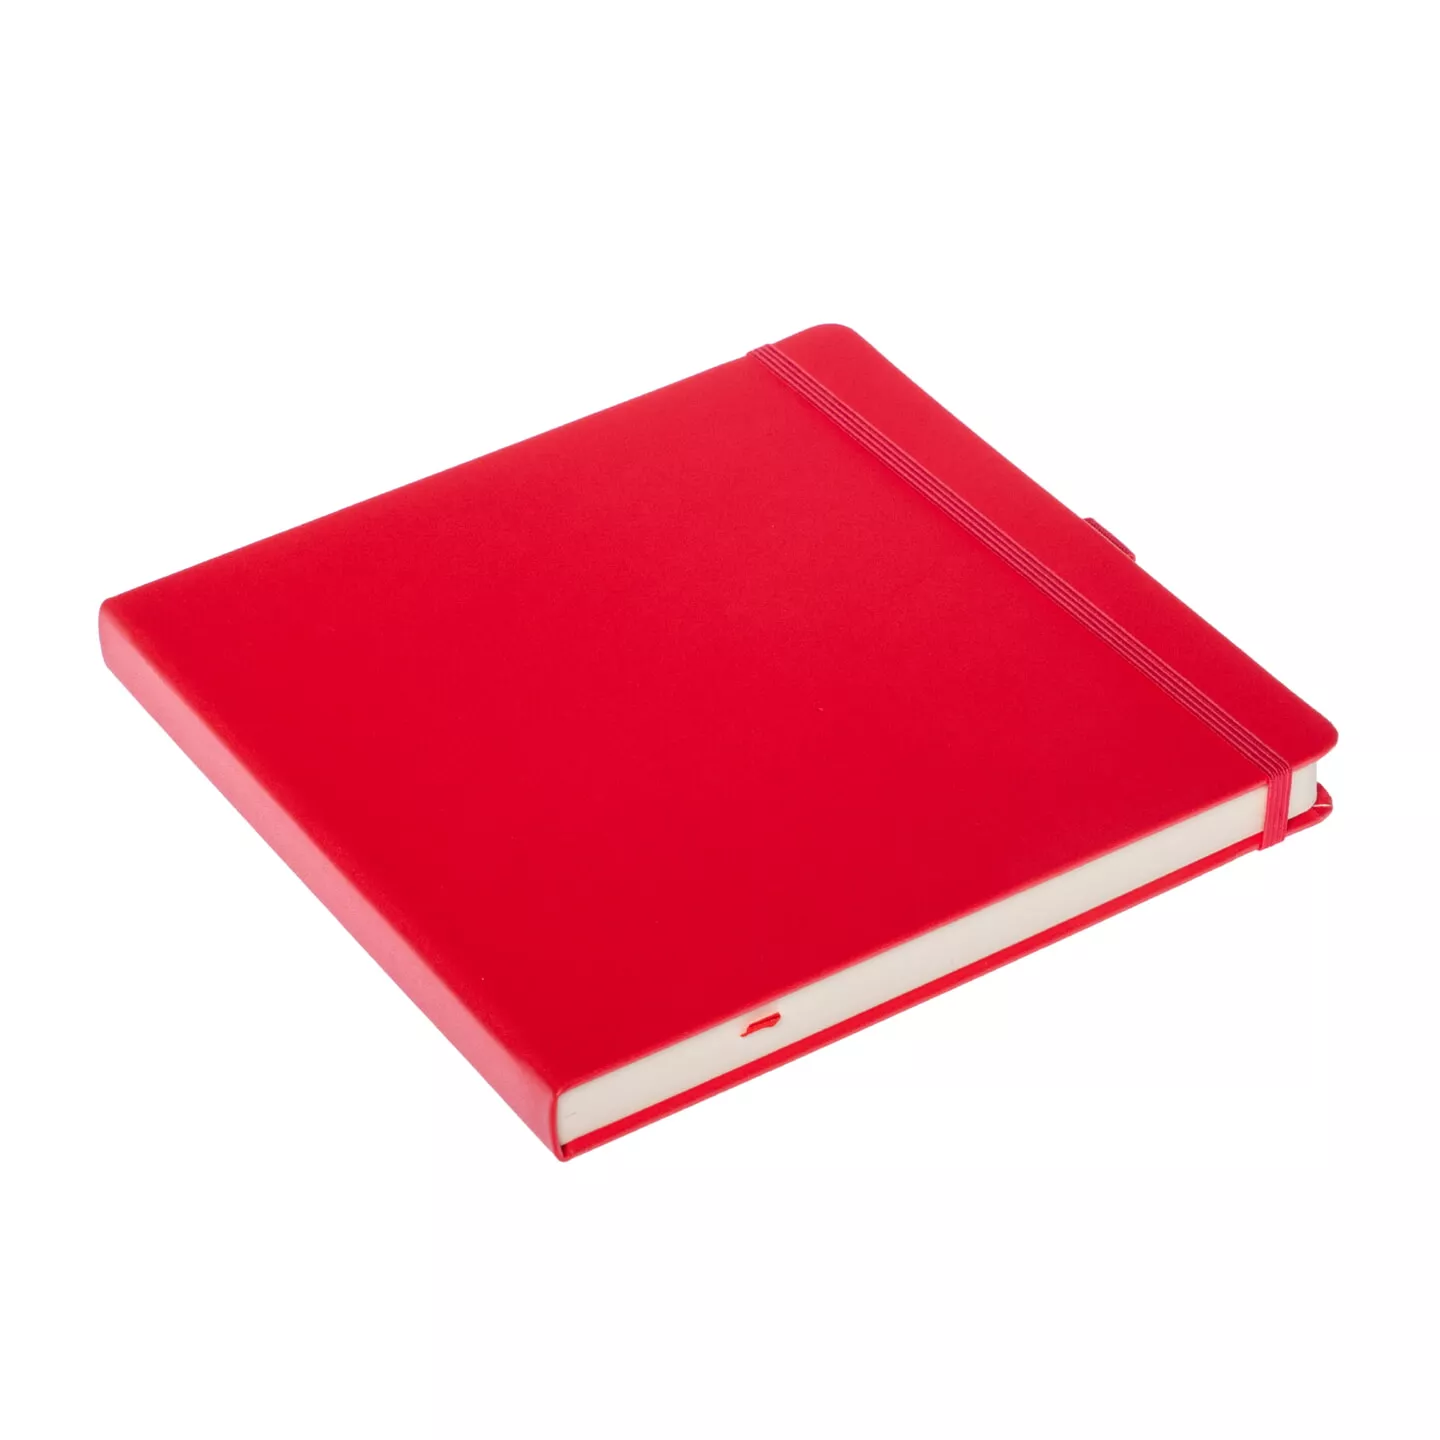 Блокнот для зарисовок Sketchmarker 140г/кв.м 20*20cм 80л (Красный)